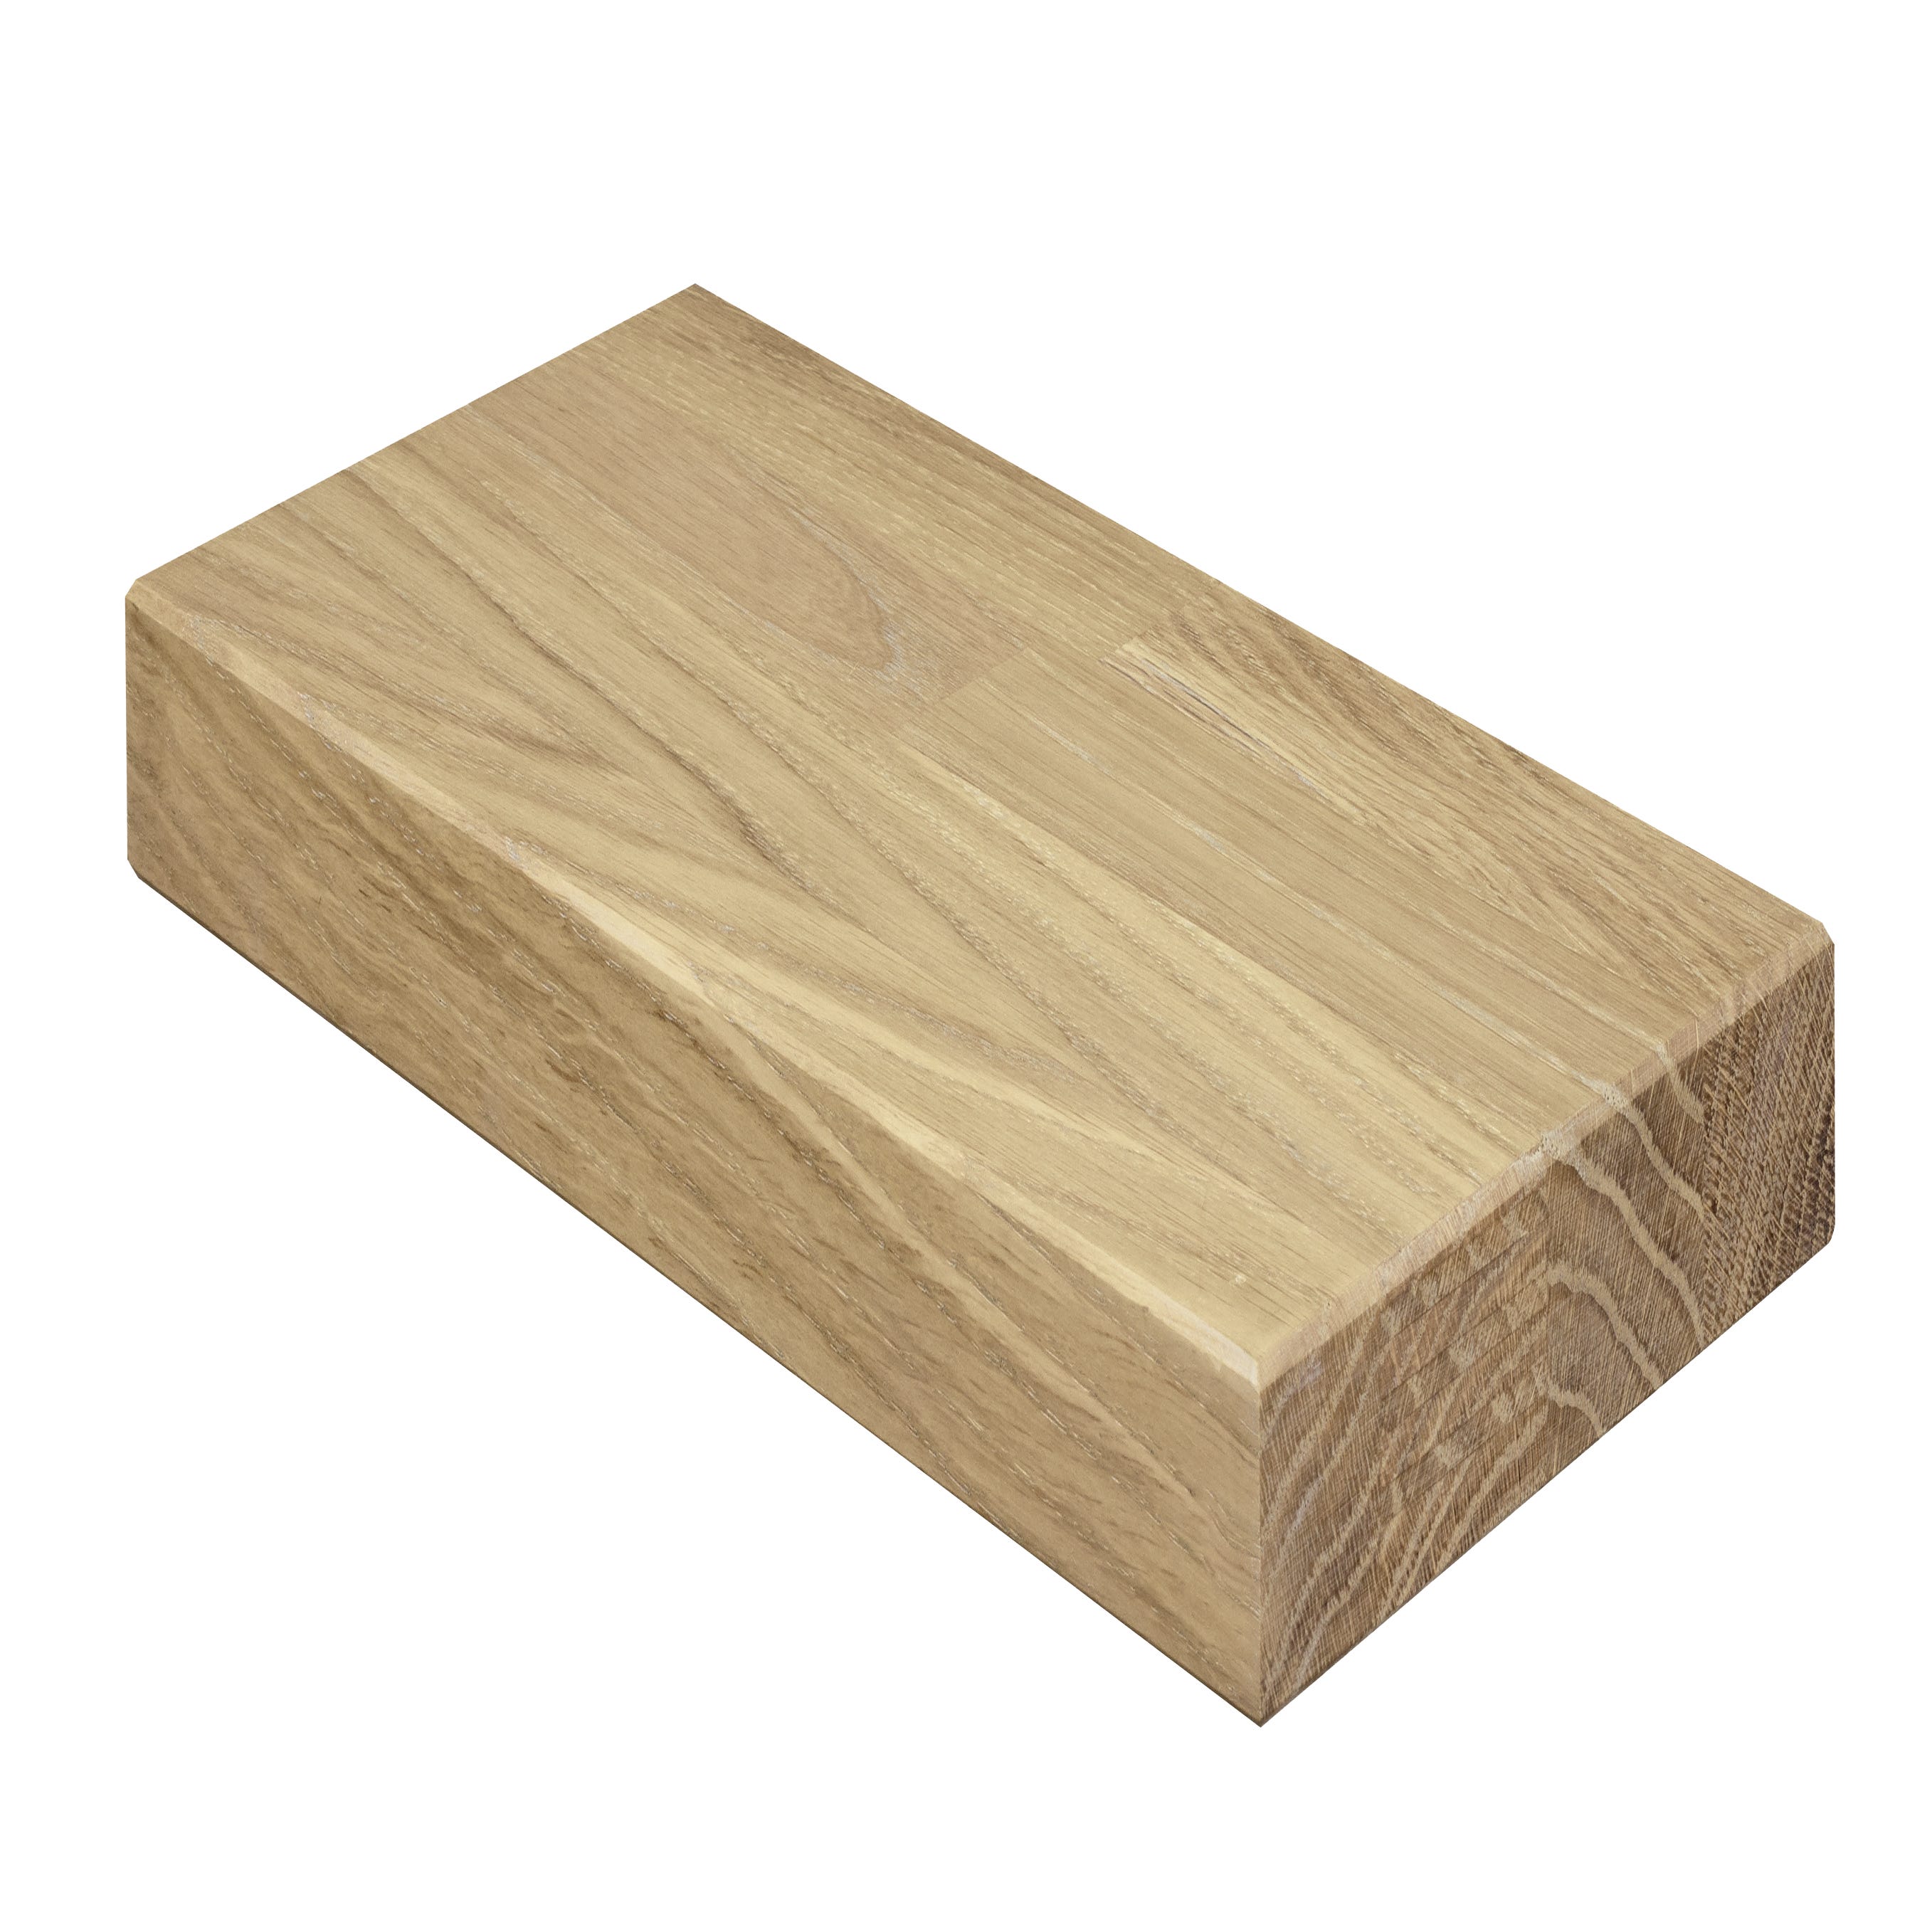 Basicmadera  Encimera de madera a medida para mi cocina: dónde comprarla y  qué opciones tengo